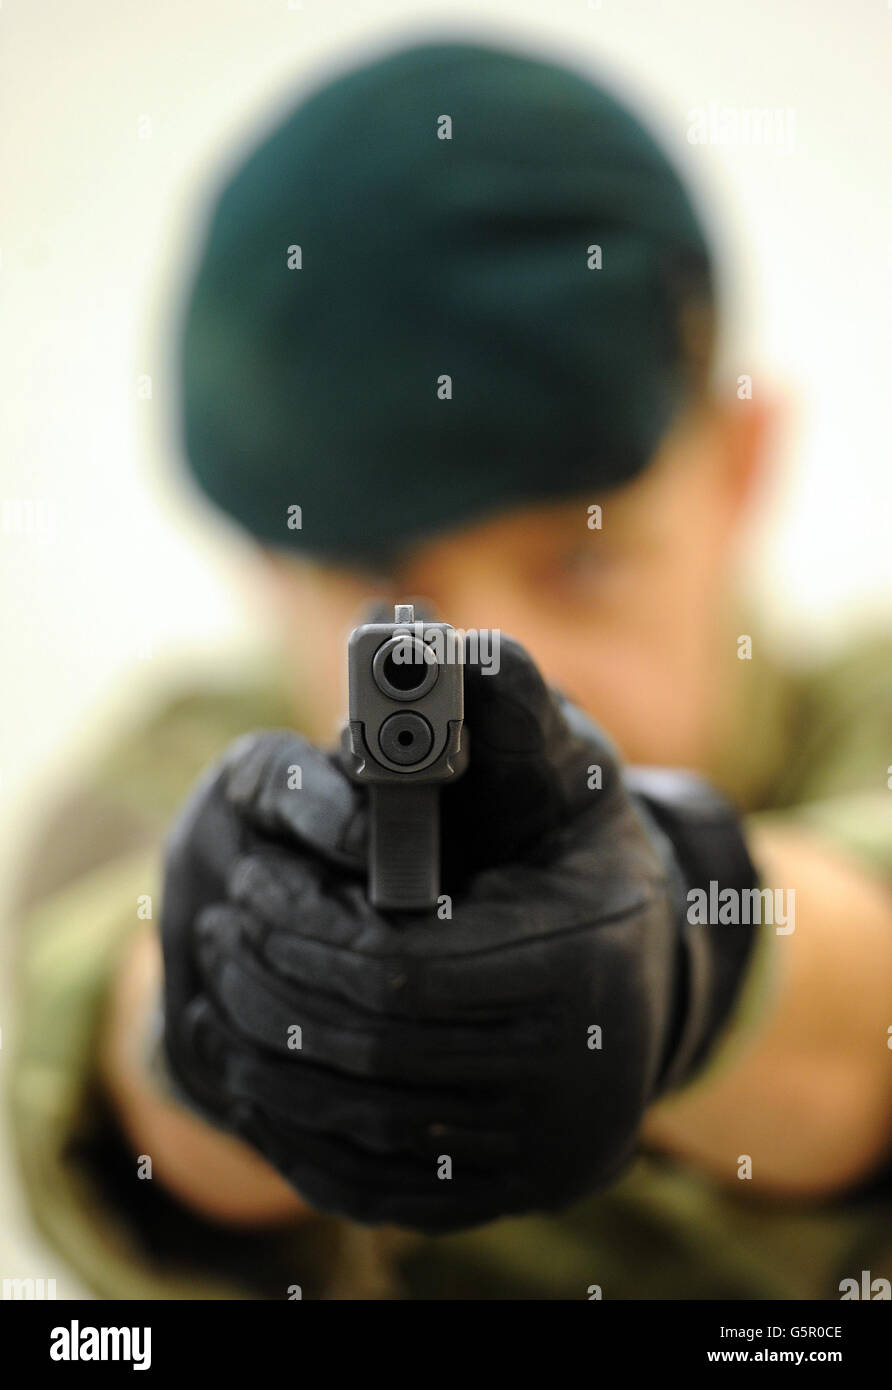 Le Sergent Royal Marine Steve Lord teste un pistolet Glock 17 9mm, sur un stand de tir intérieur à Woolwich Barracks, dans le sud-est de Londres, car le personnel des trois services doit commencer à utiliser les nouvelles pistolets Glock après l'attribution d'un contrat pour remplacer le modèle Browning actuellement utilisé. Banque D'Images